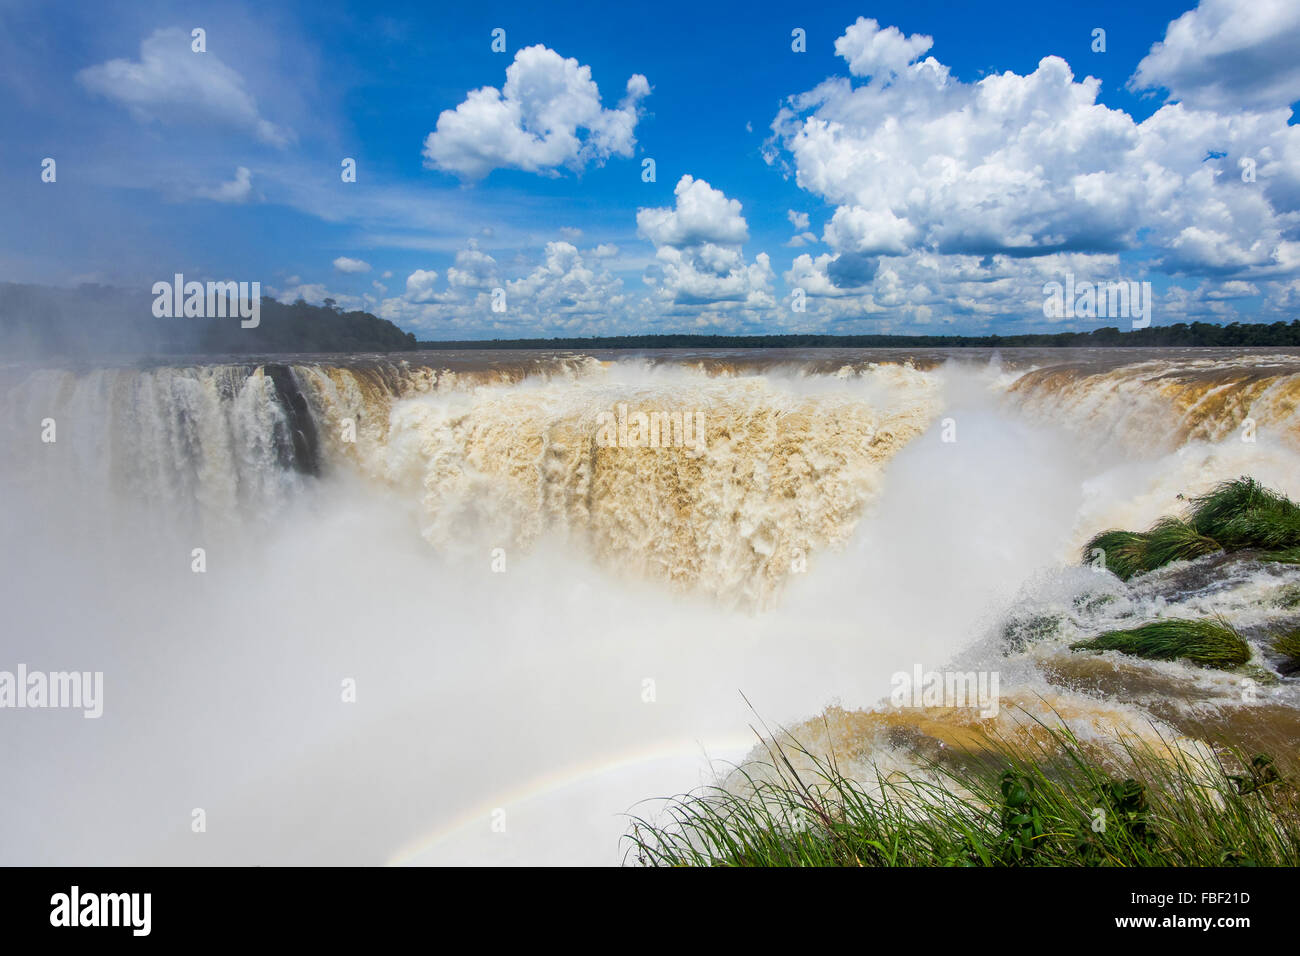 Ansicht der Teufelskehle (Garganta del Diablo), der größten Kaskade in Iguazu Wasserfälle an der Grenze zwischen Argentinien und Brasilien. Stockfoto